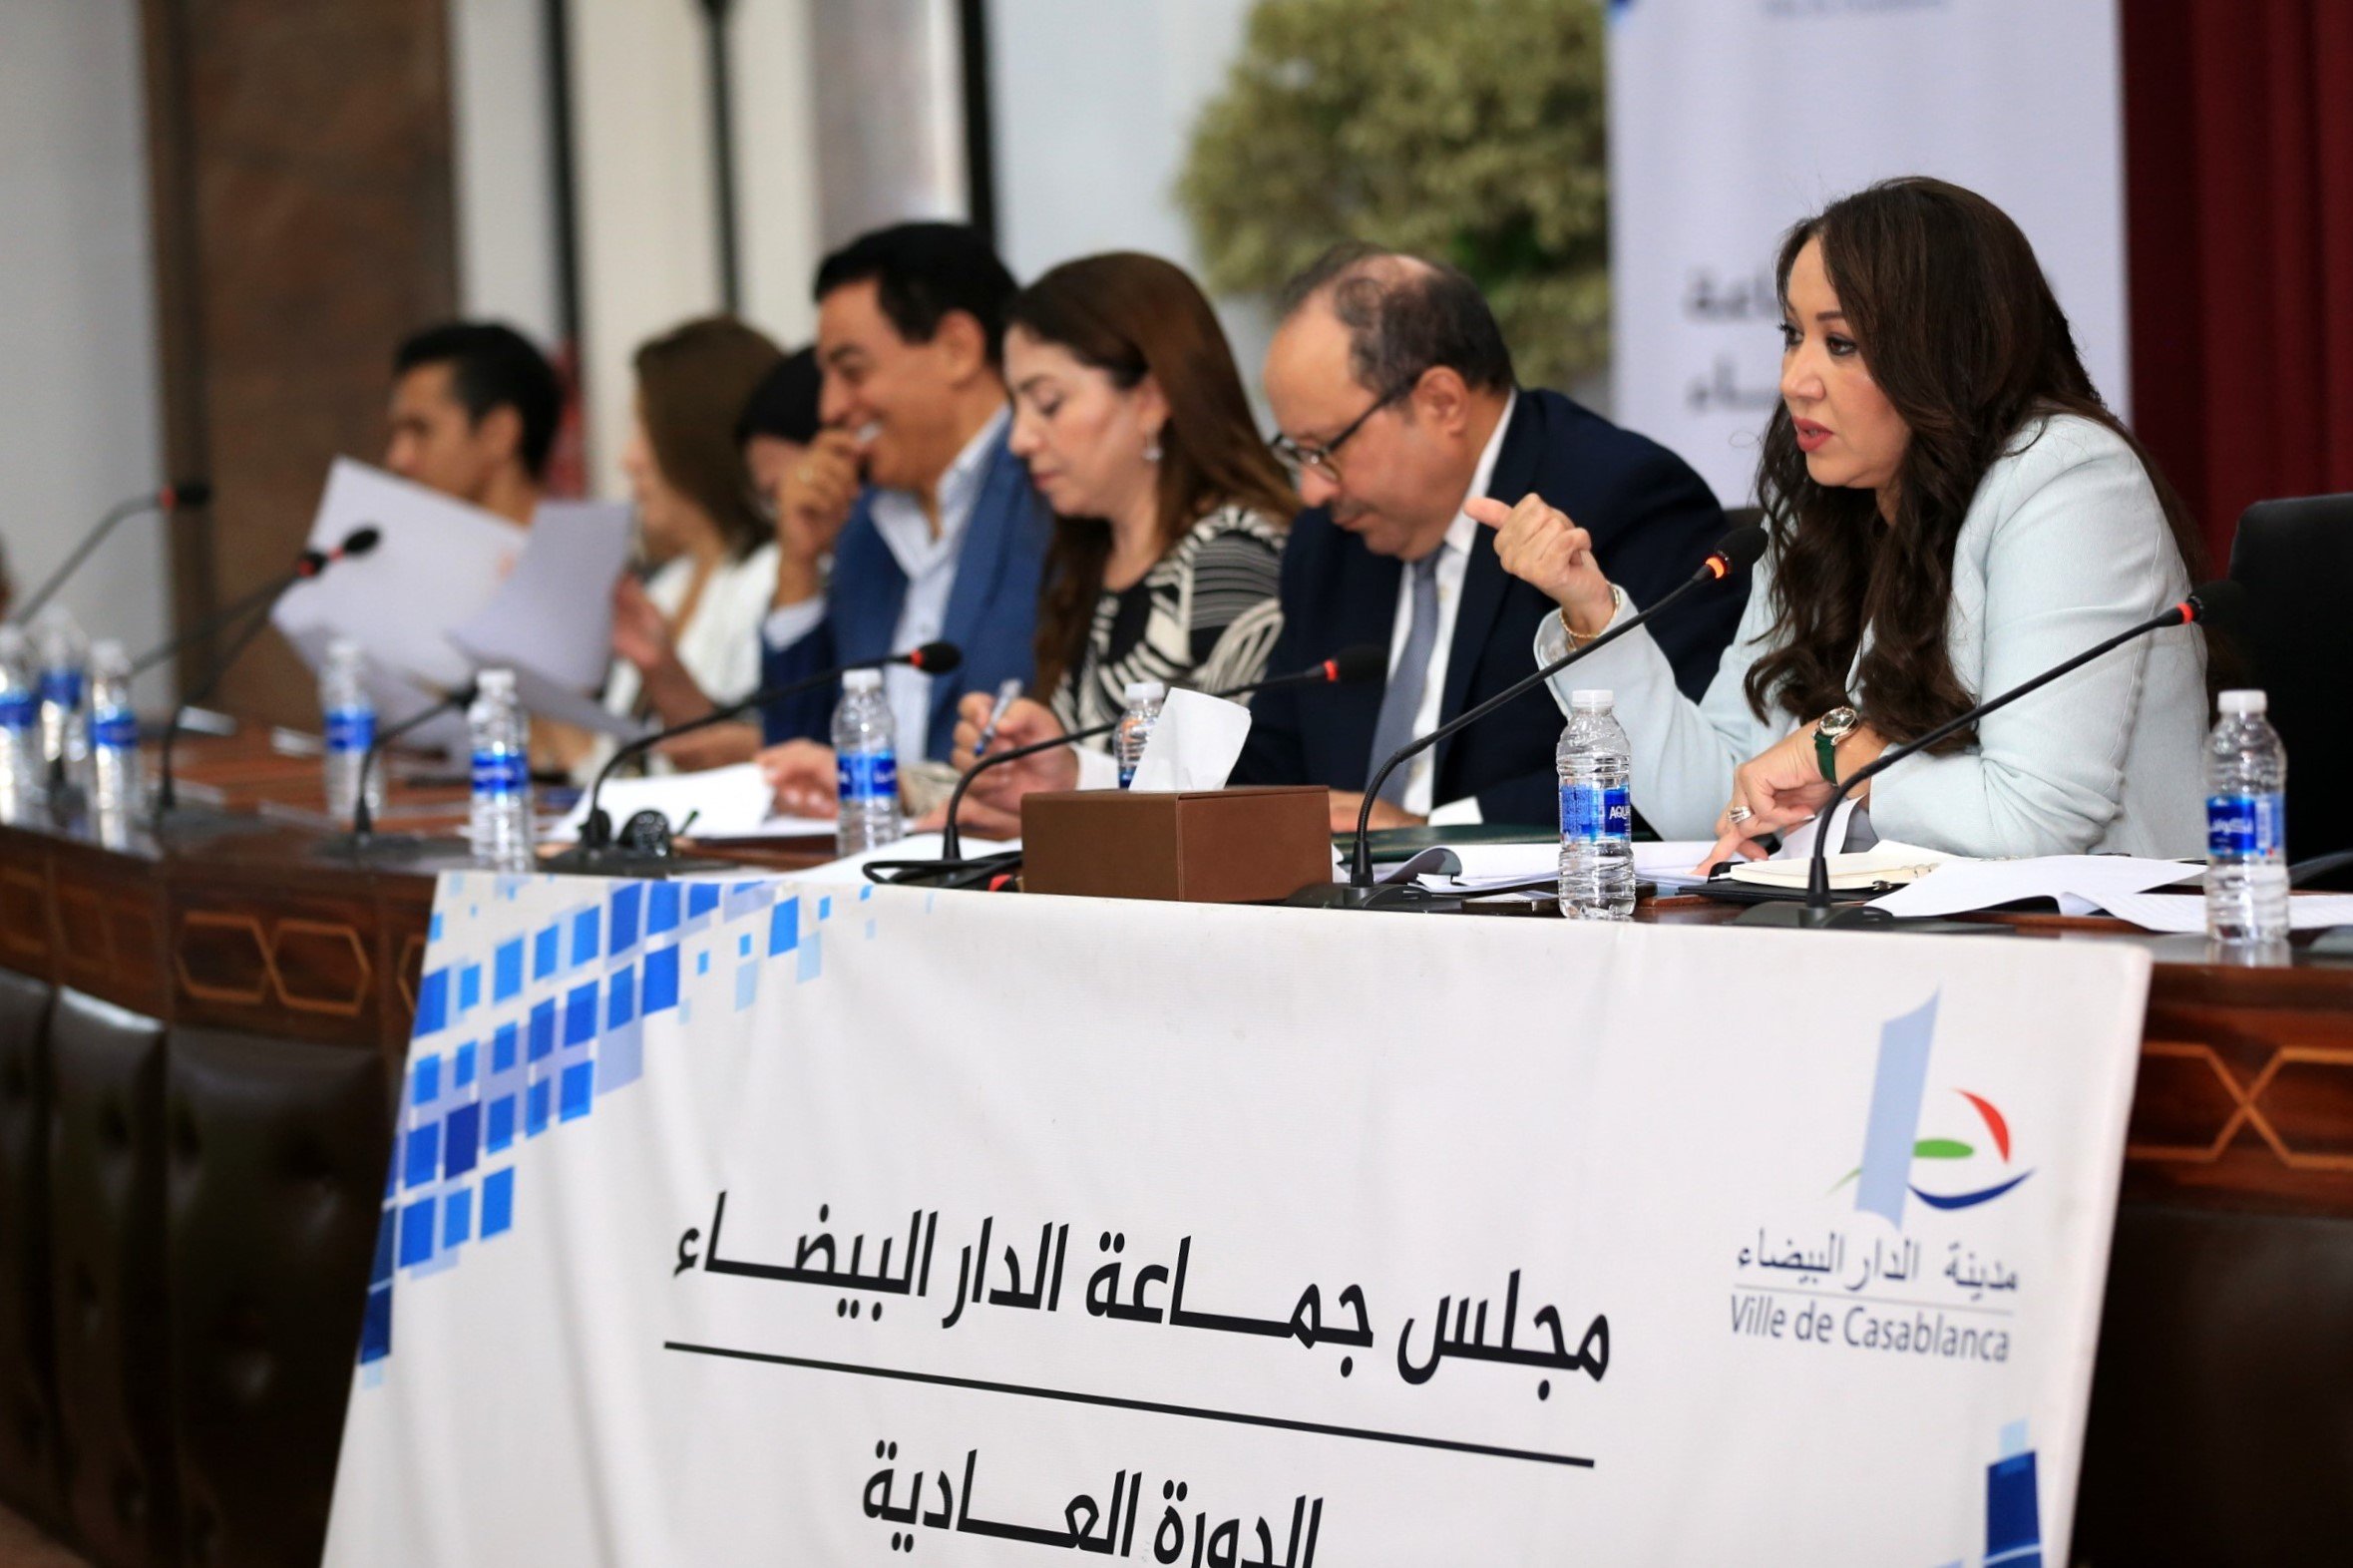 مجلس جماعة الدار البيضاء يصادق على عدد من اتفاقيات الشراكة تهم مجال التعمير